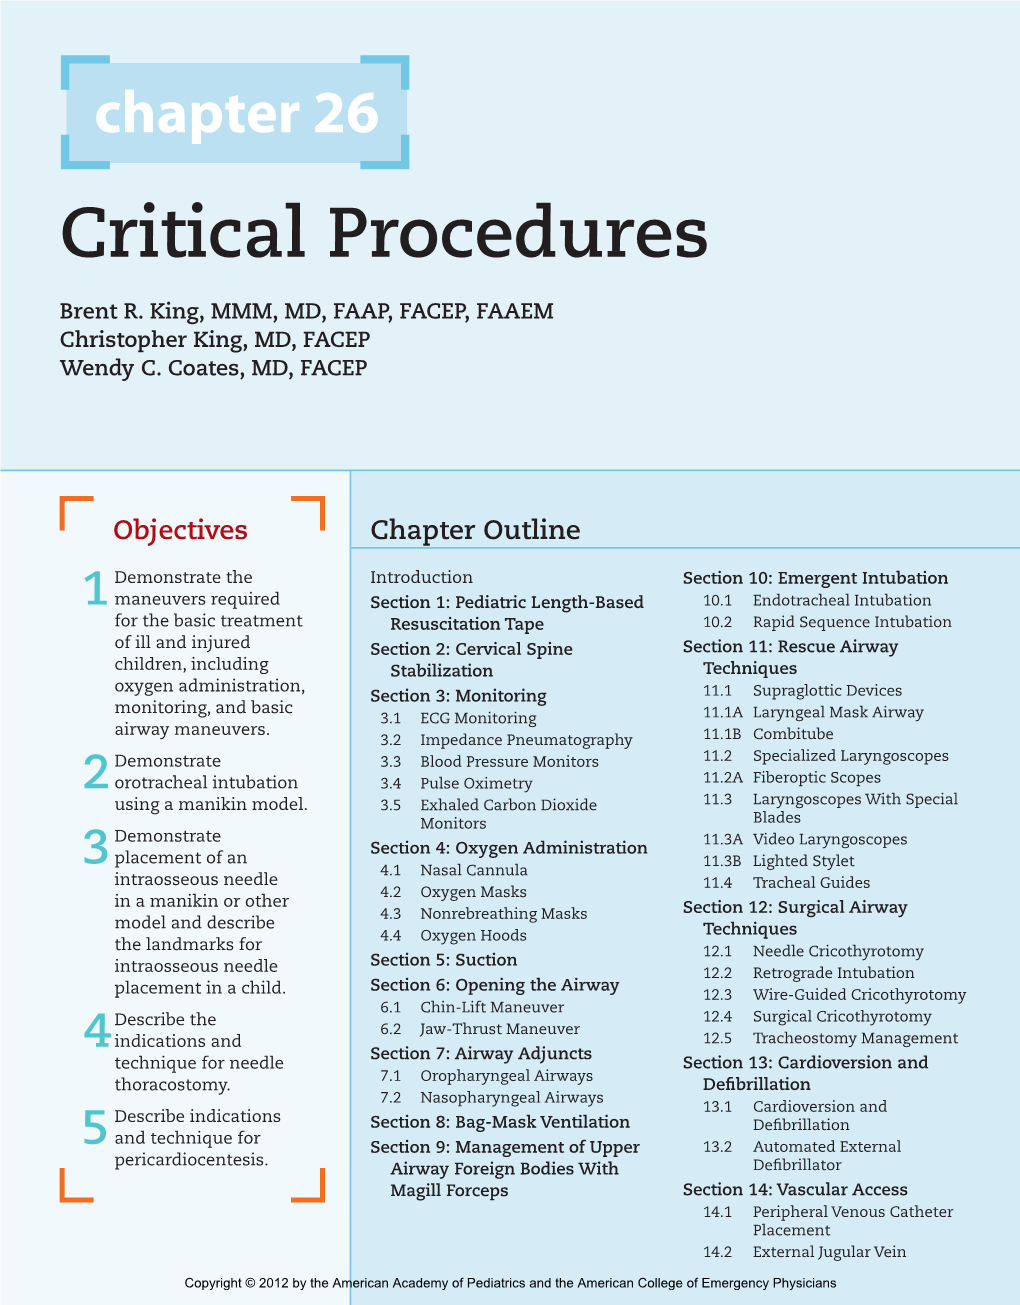 Critical Procedures